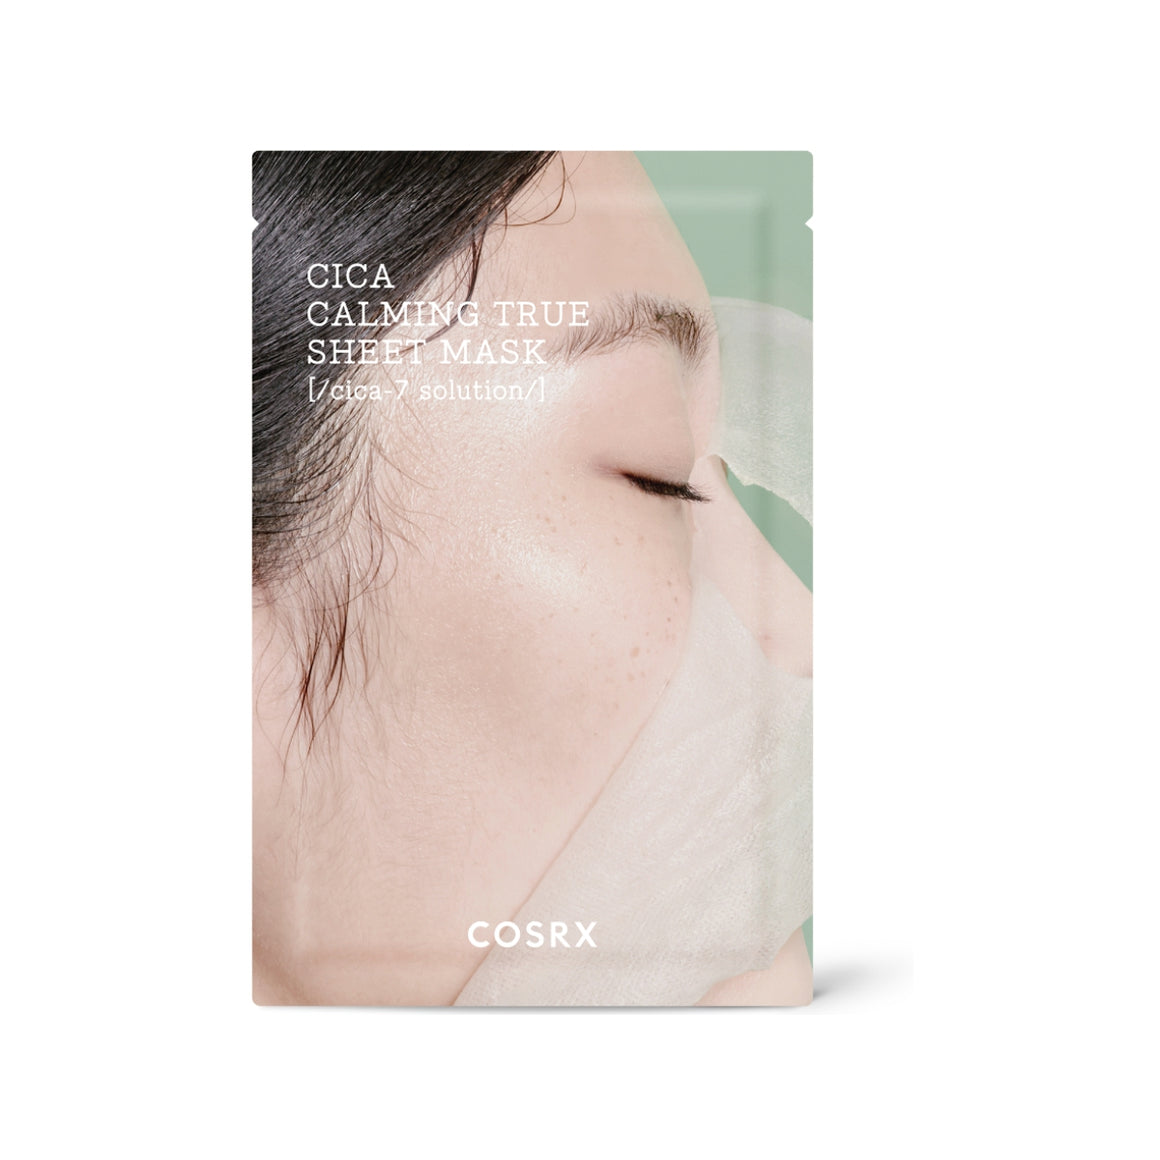 COSRX Cica Calming True Sheet Mask